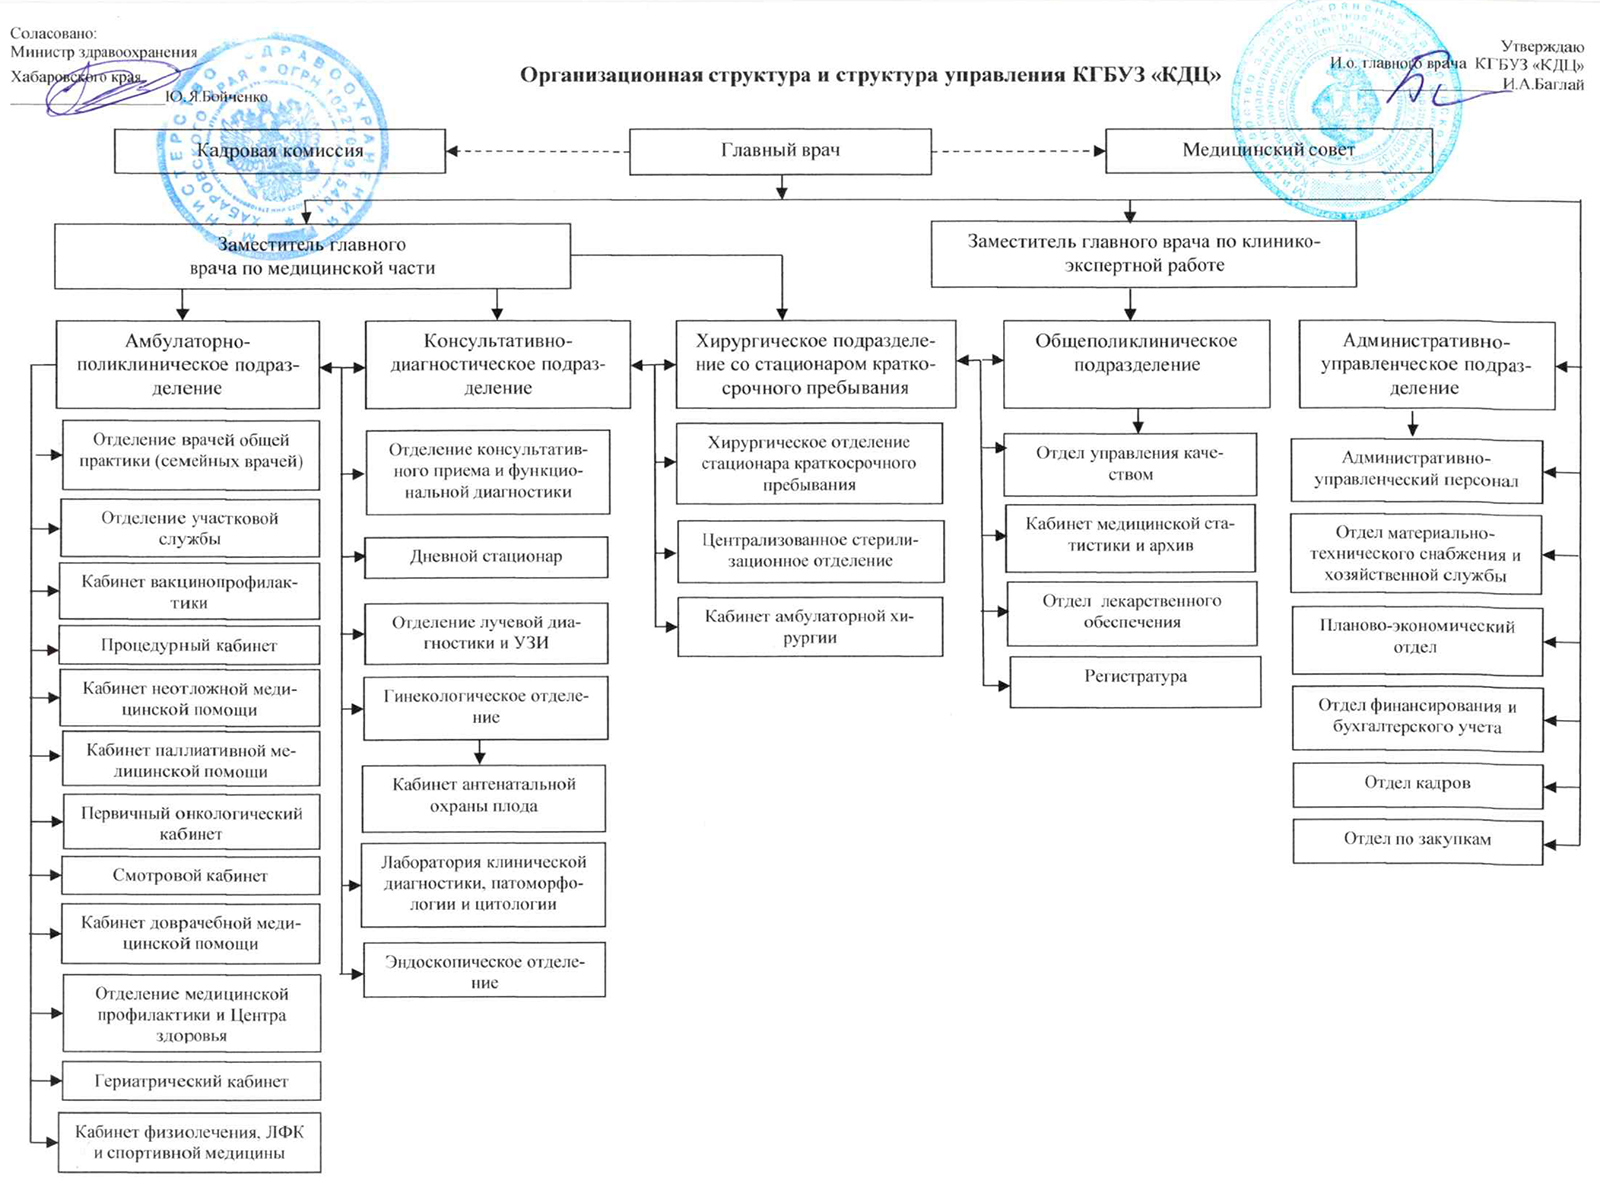 Организационная структура и структура управления